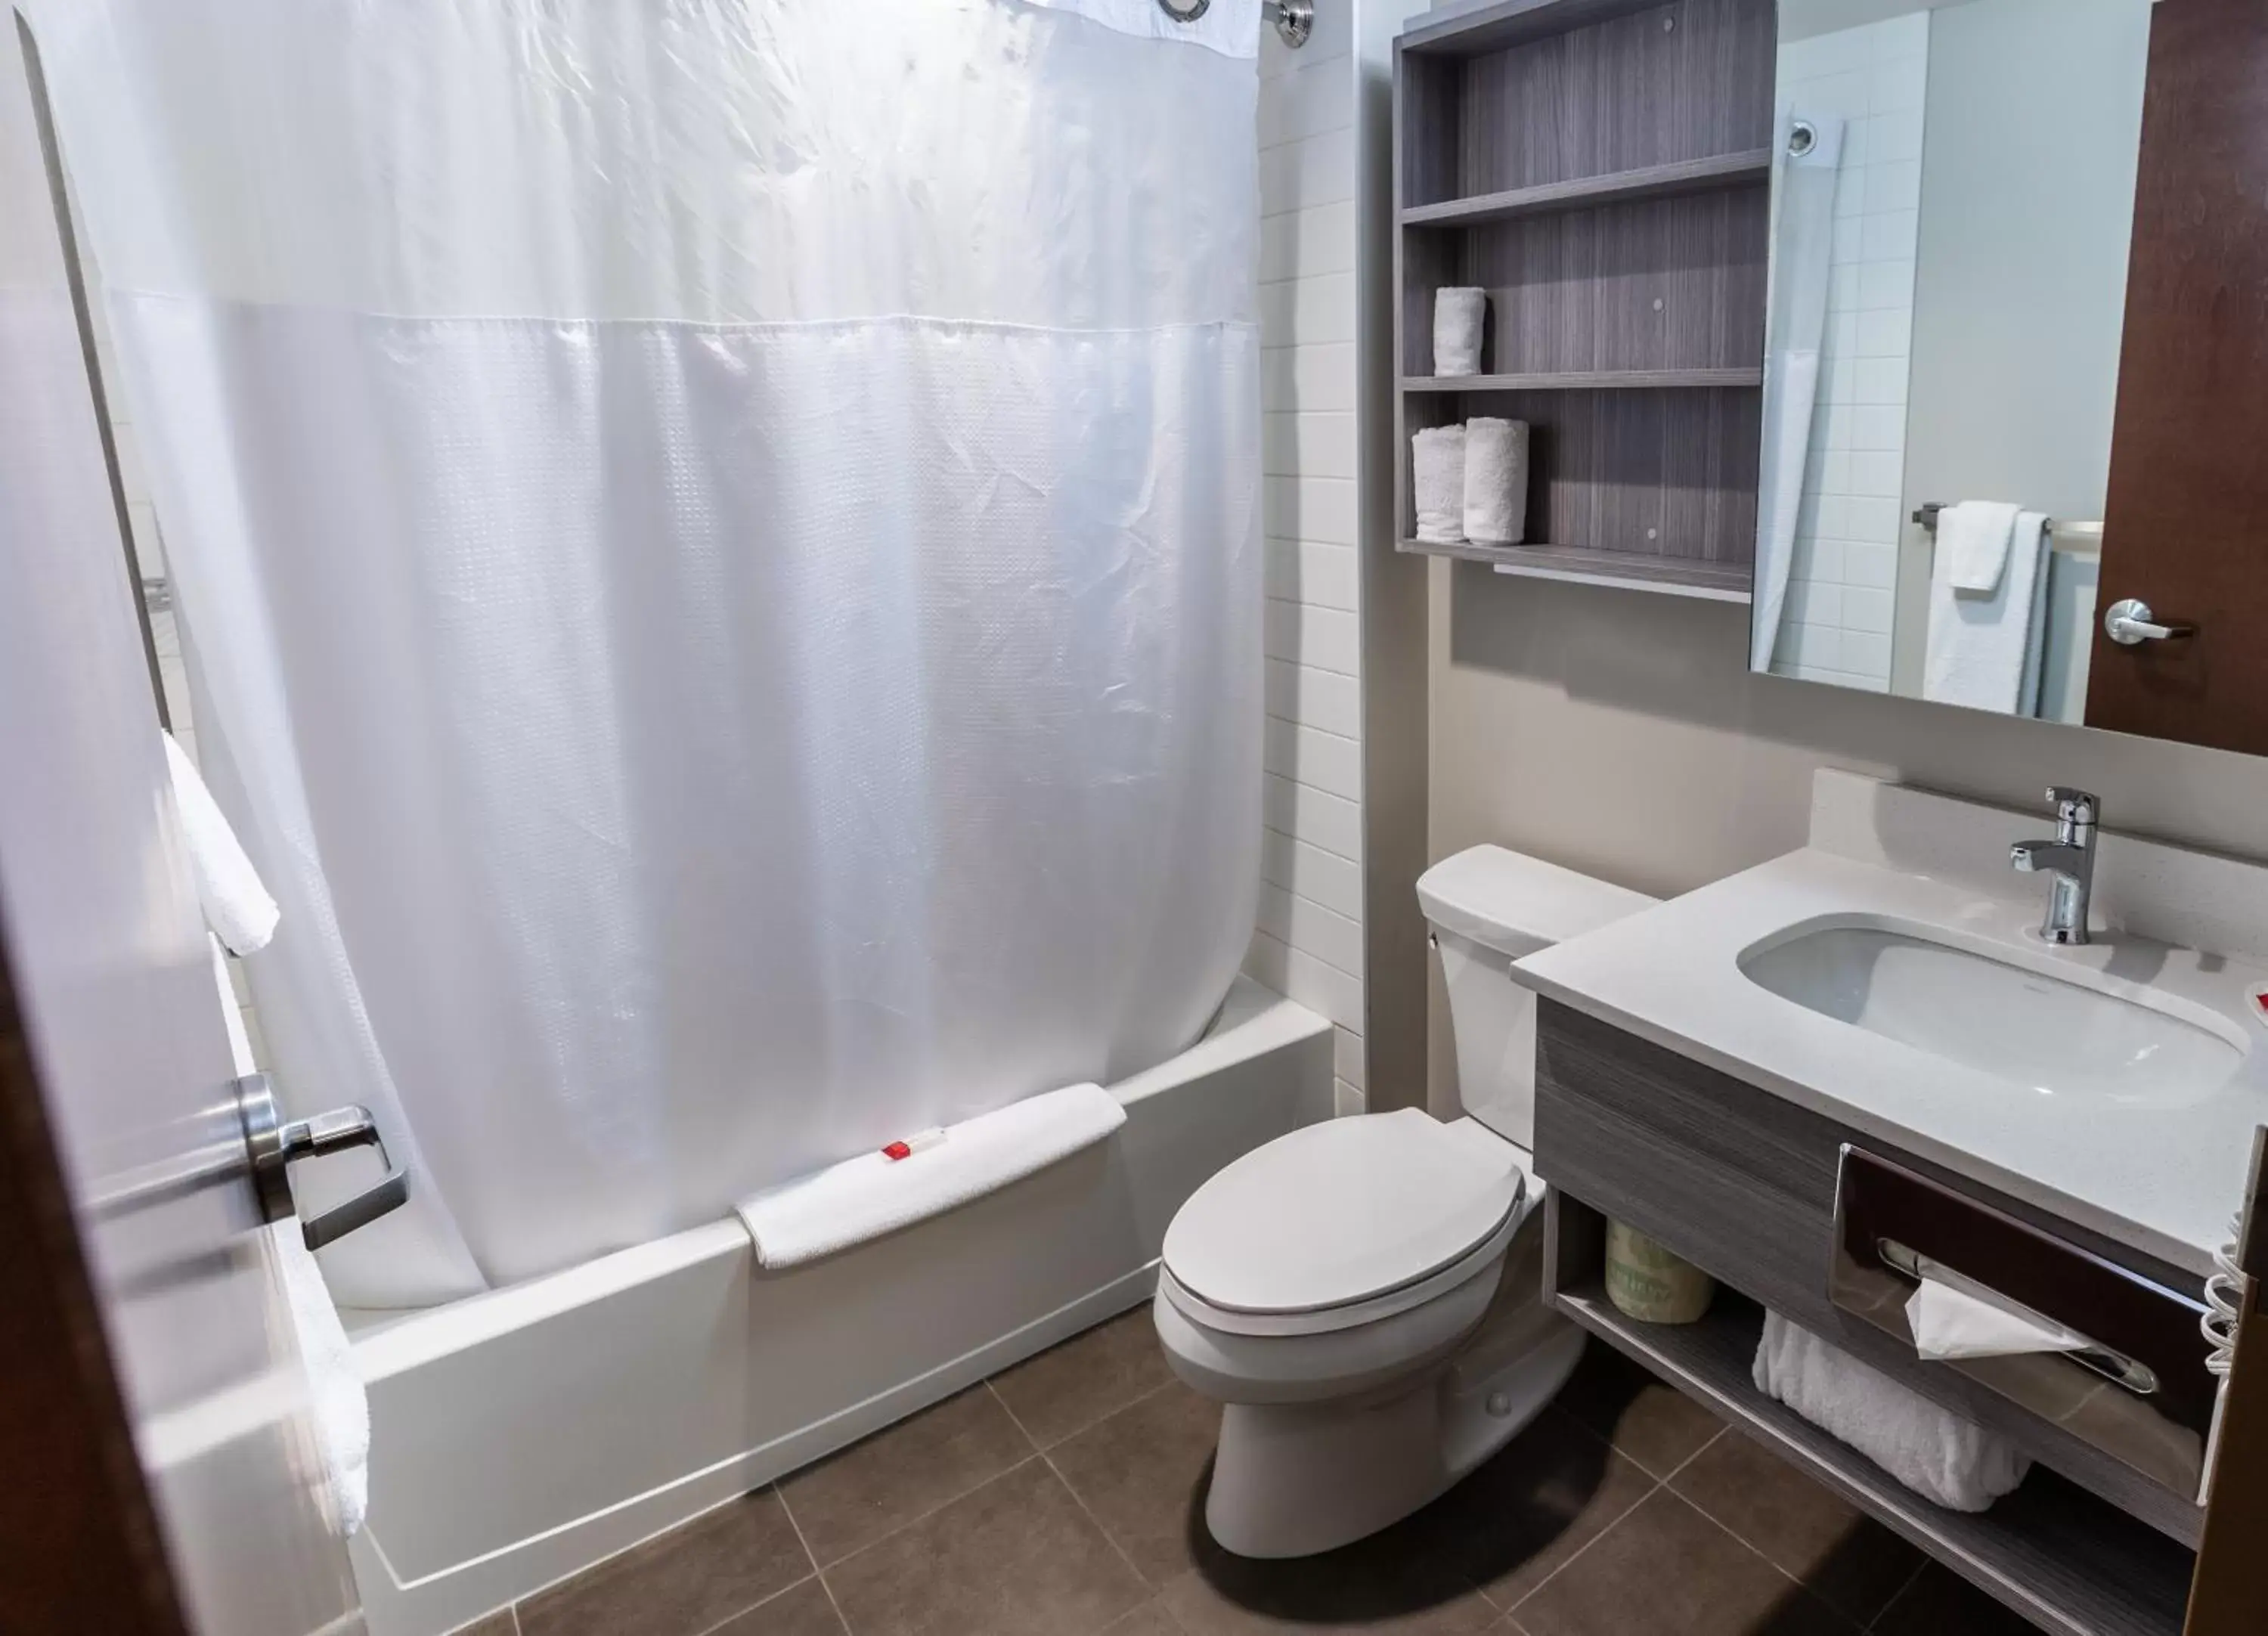 Toilet, Bathroom in Microtel Inn & Suites by Wyndham Lloydminster